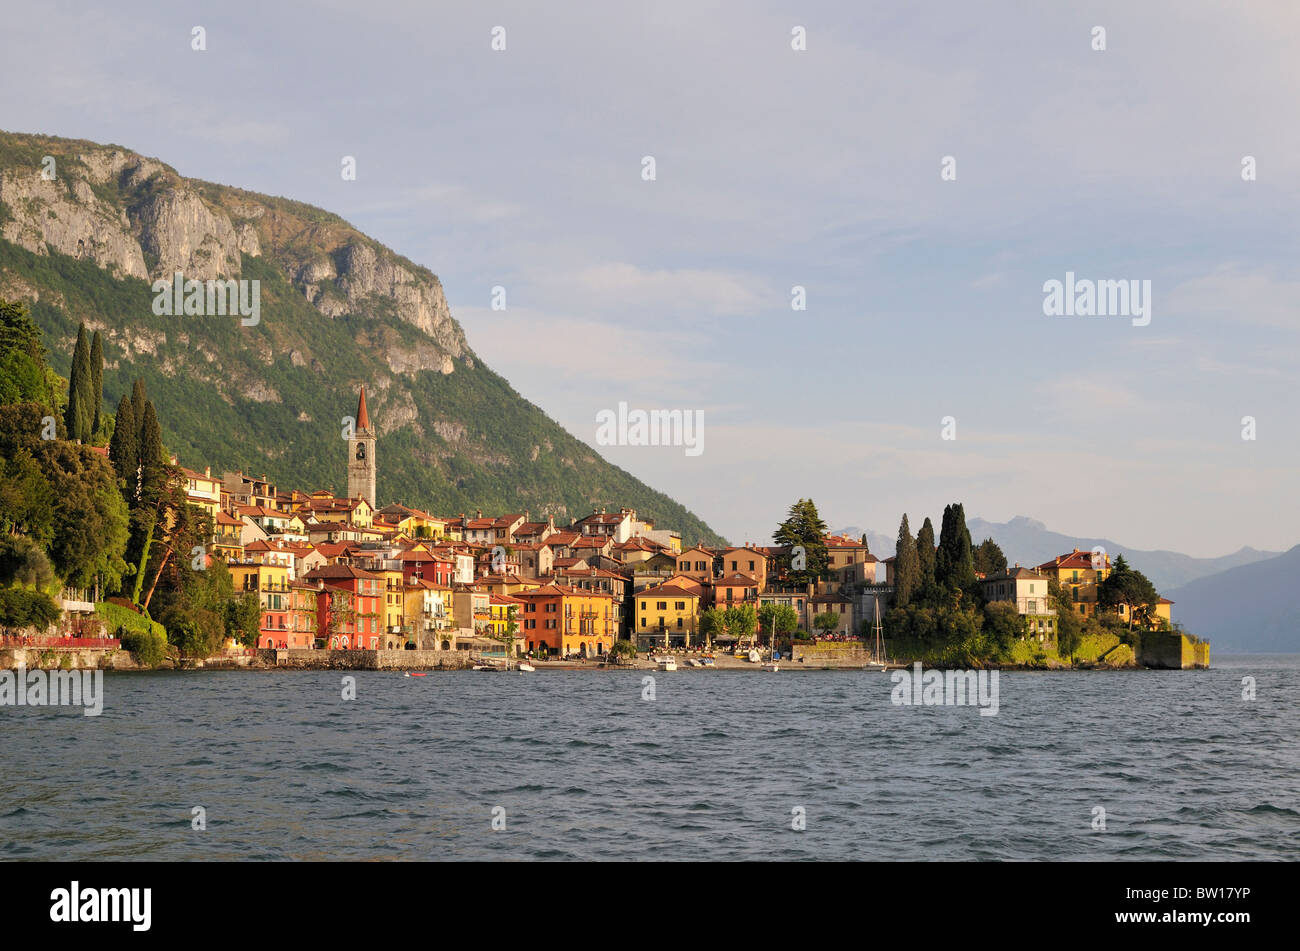 View to Bellagio at Lago di Como, Como, Italy Stock Photo